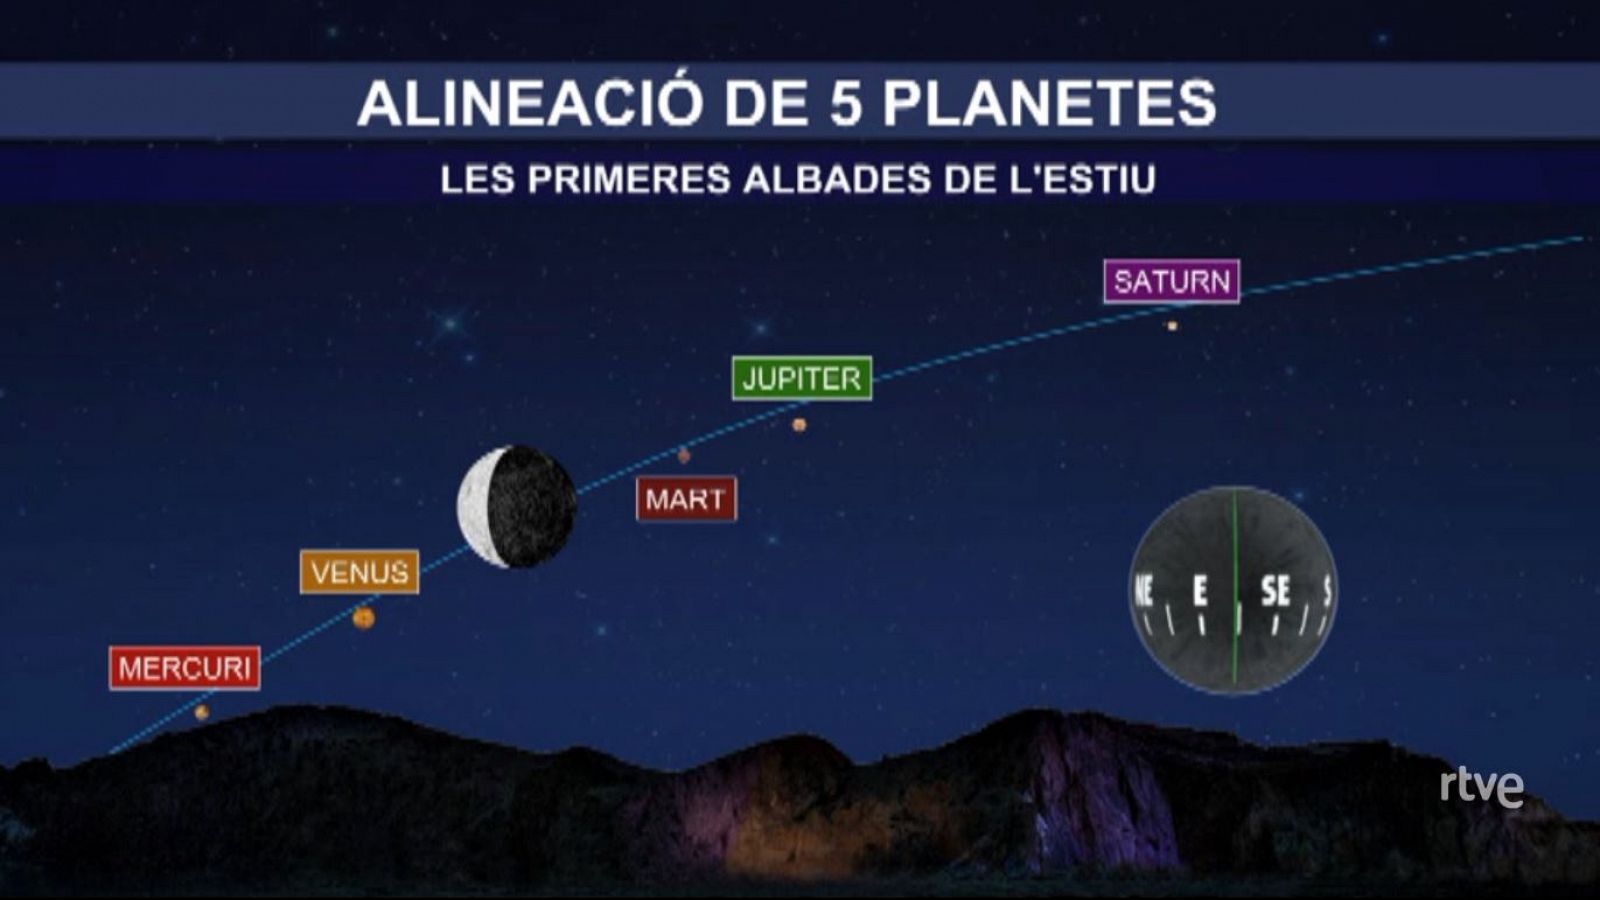 Alineació de 5 planetes abans de les albades